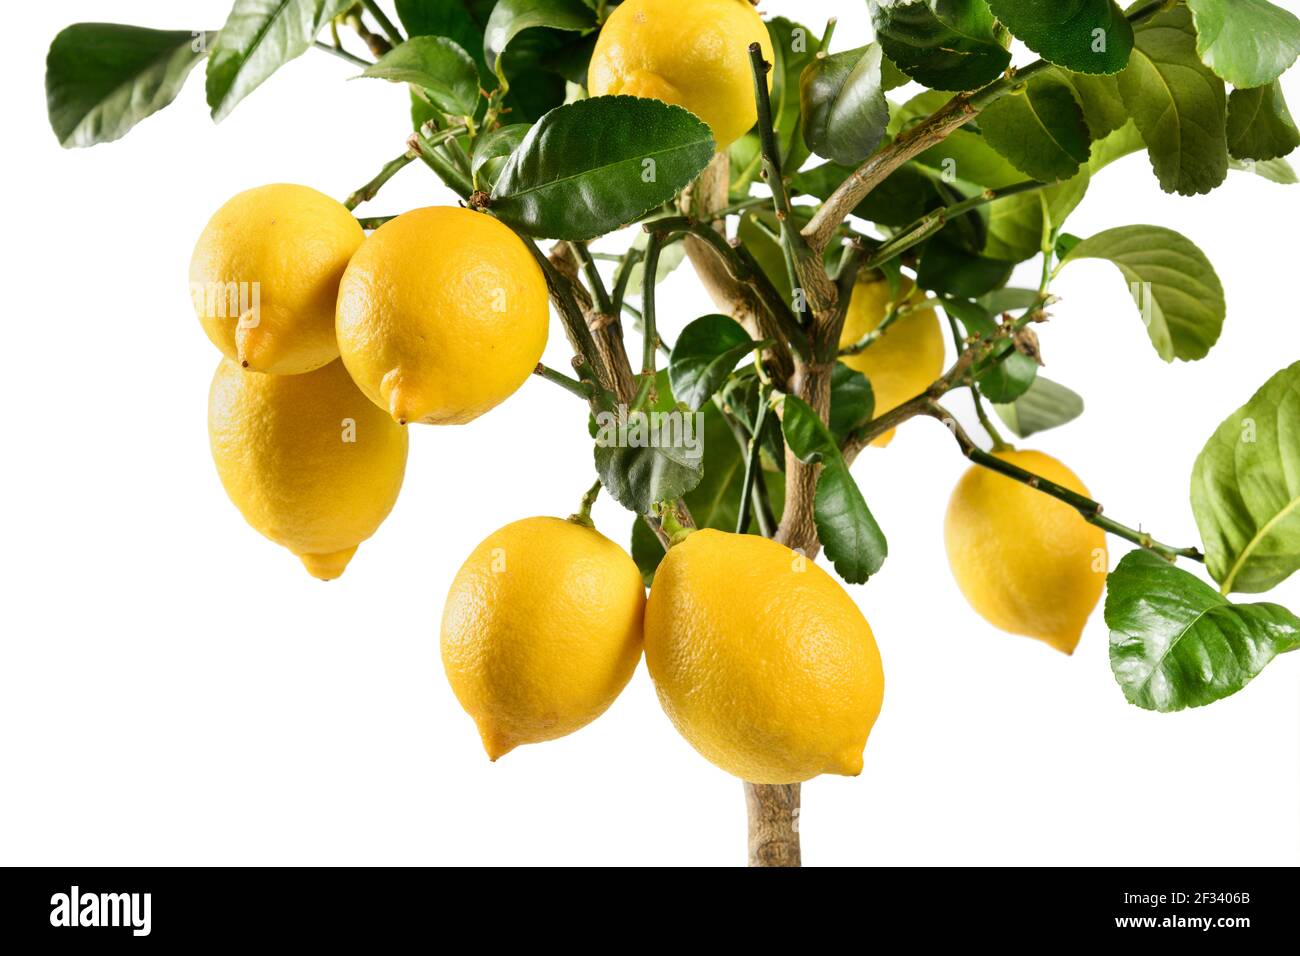 Nahaufnahme von reifenden gelben Zitronen auf einem dekorativen Topf Zitrusbaum mit seinen glänzend grünen Blättern in einer Seite Ansicht isoliert auf weiß Stockfoto